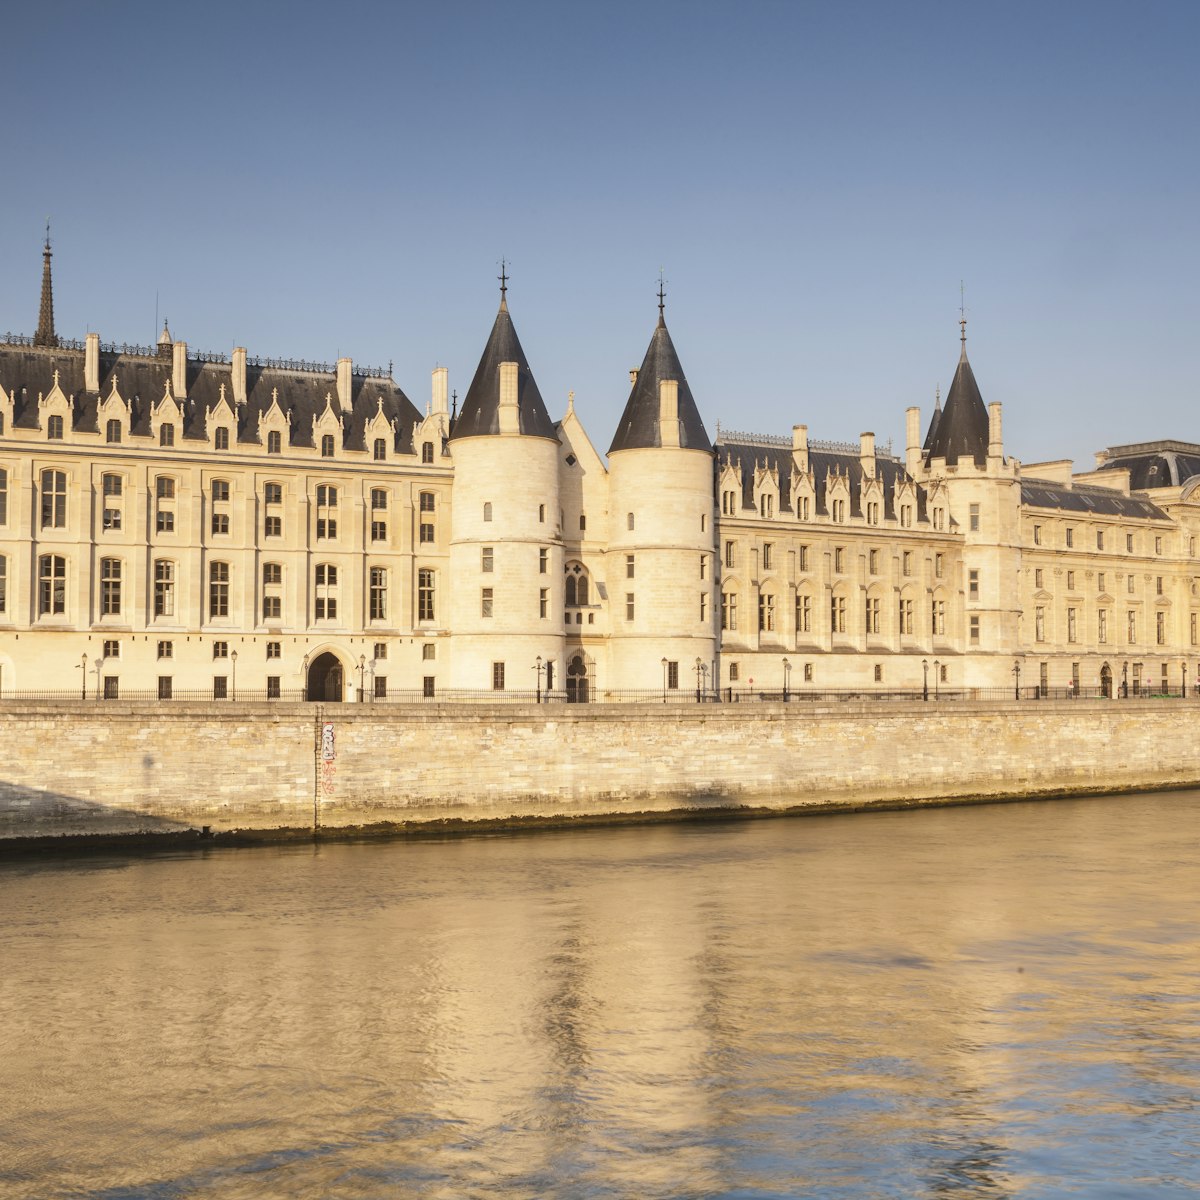 The Conciergerie and the River Seine, Paris.